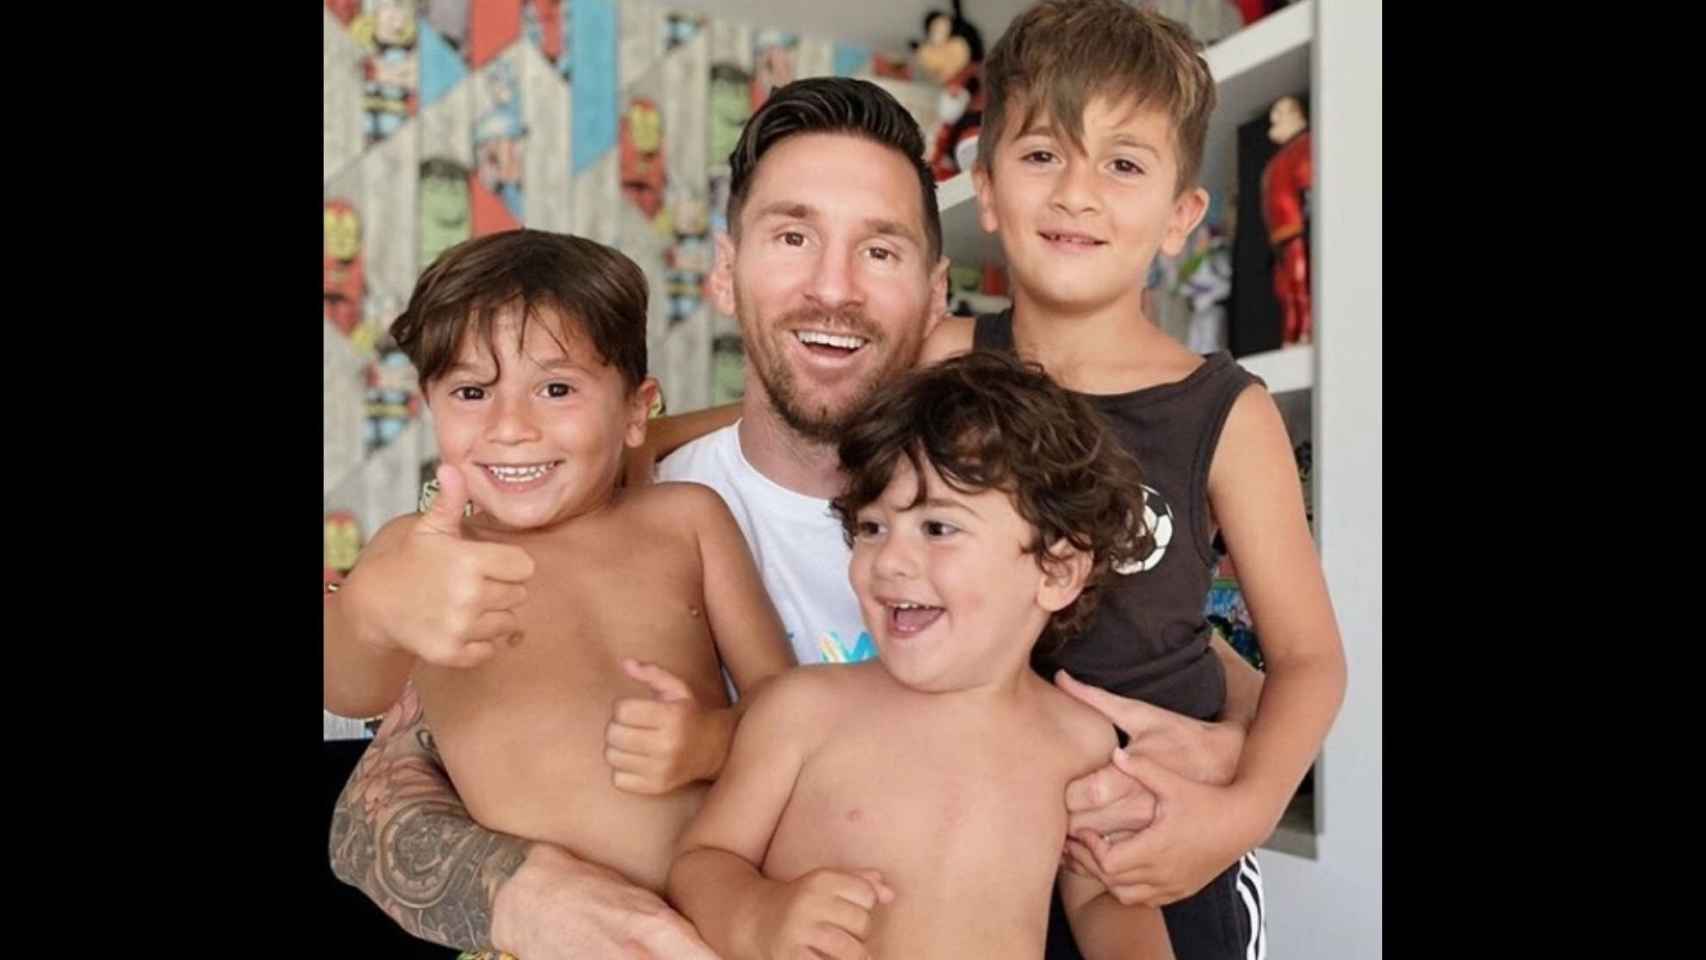 Leo Messi, junto a sus tres hijos | IG